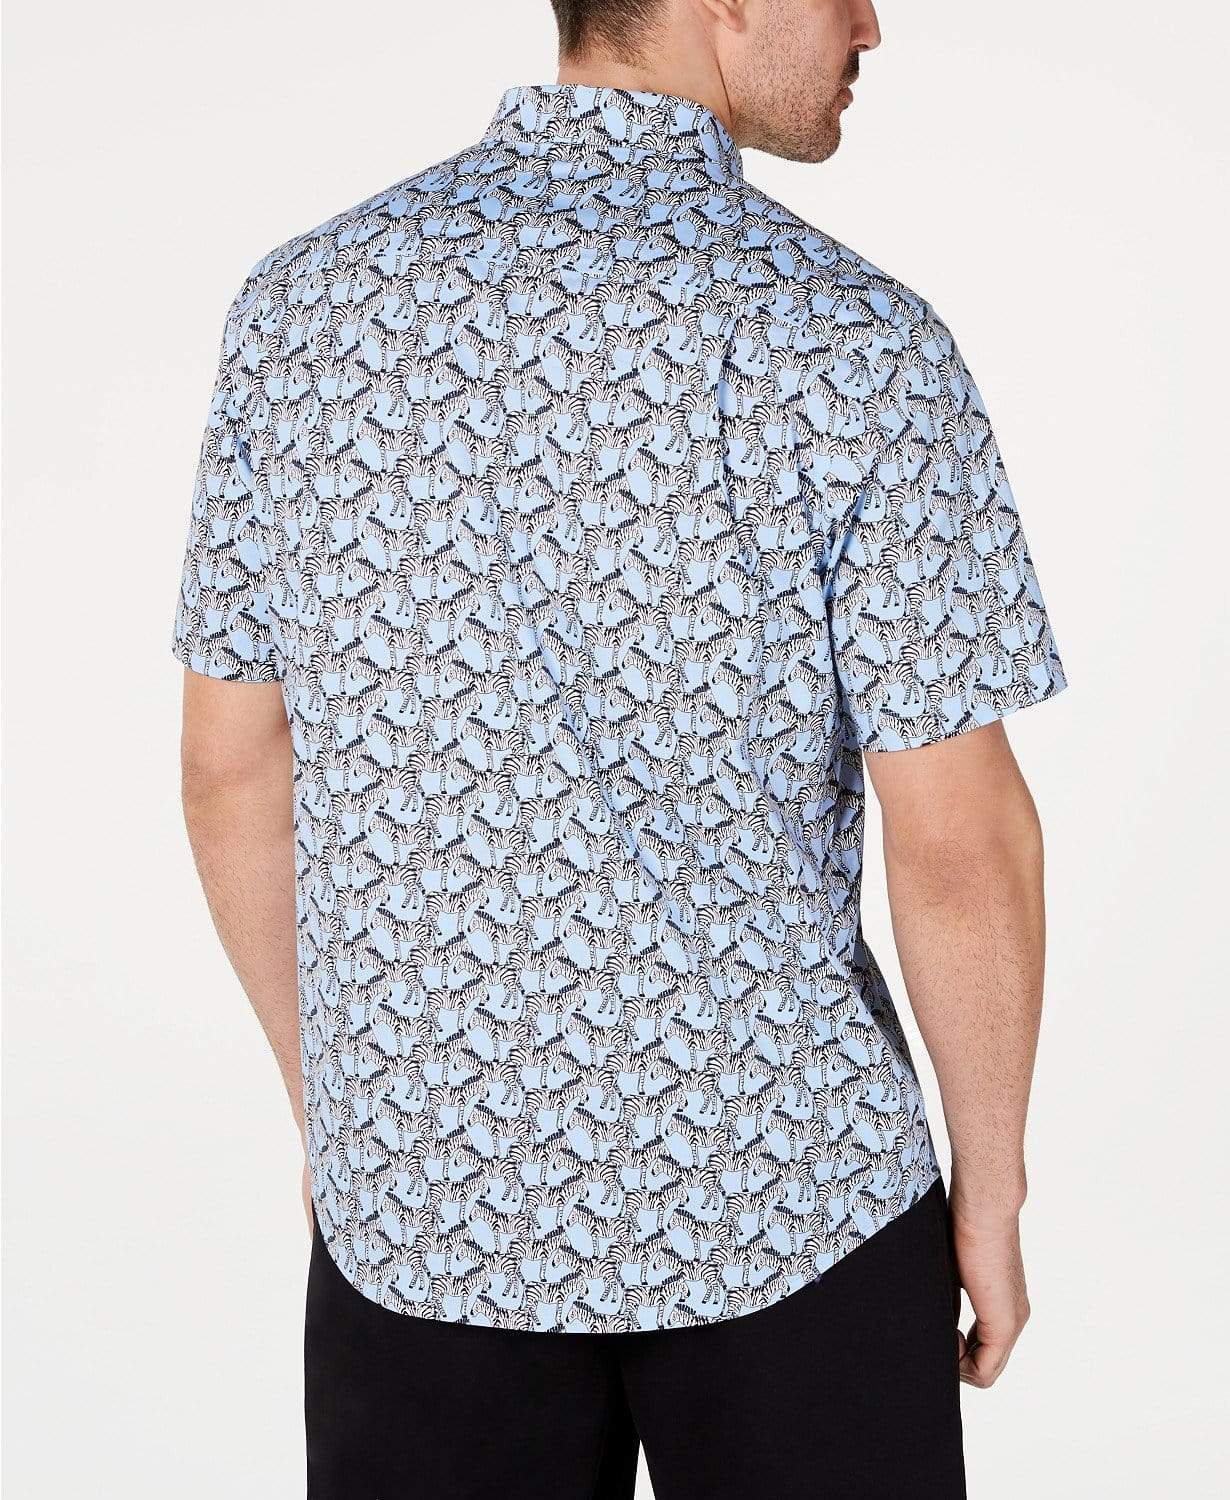 Club Room Mens Tops L / Blue Zebra-Print Shirt